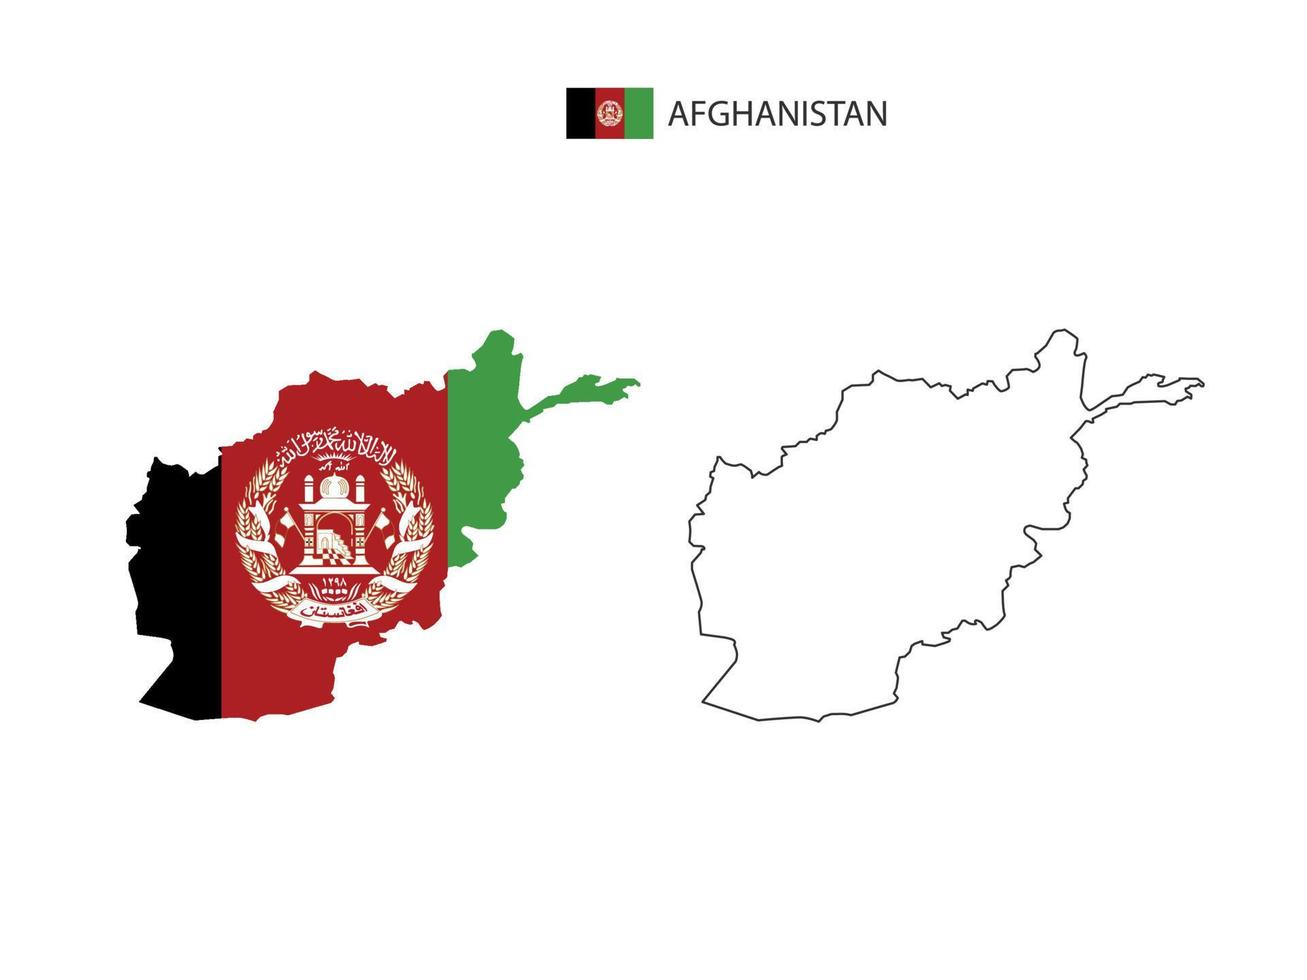 afghanistan-karte stadtvektor geteilt durch umriss-einfachheitsstil. haben 2 Versionen, eine schwarze Version mit dünner Linie und eine Version in der Farbe der Landesflagge. beide Karten waren auf dem weißen Hintergrund. vektor